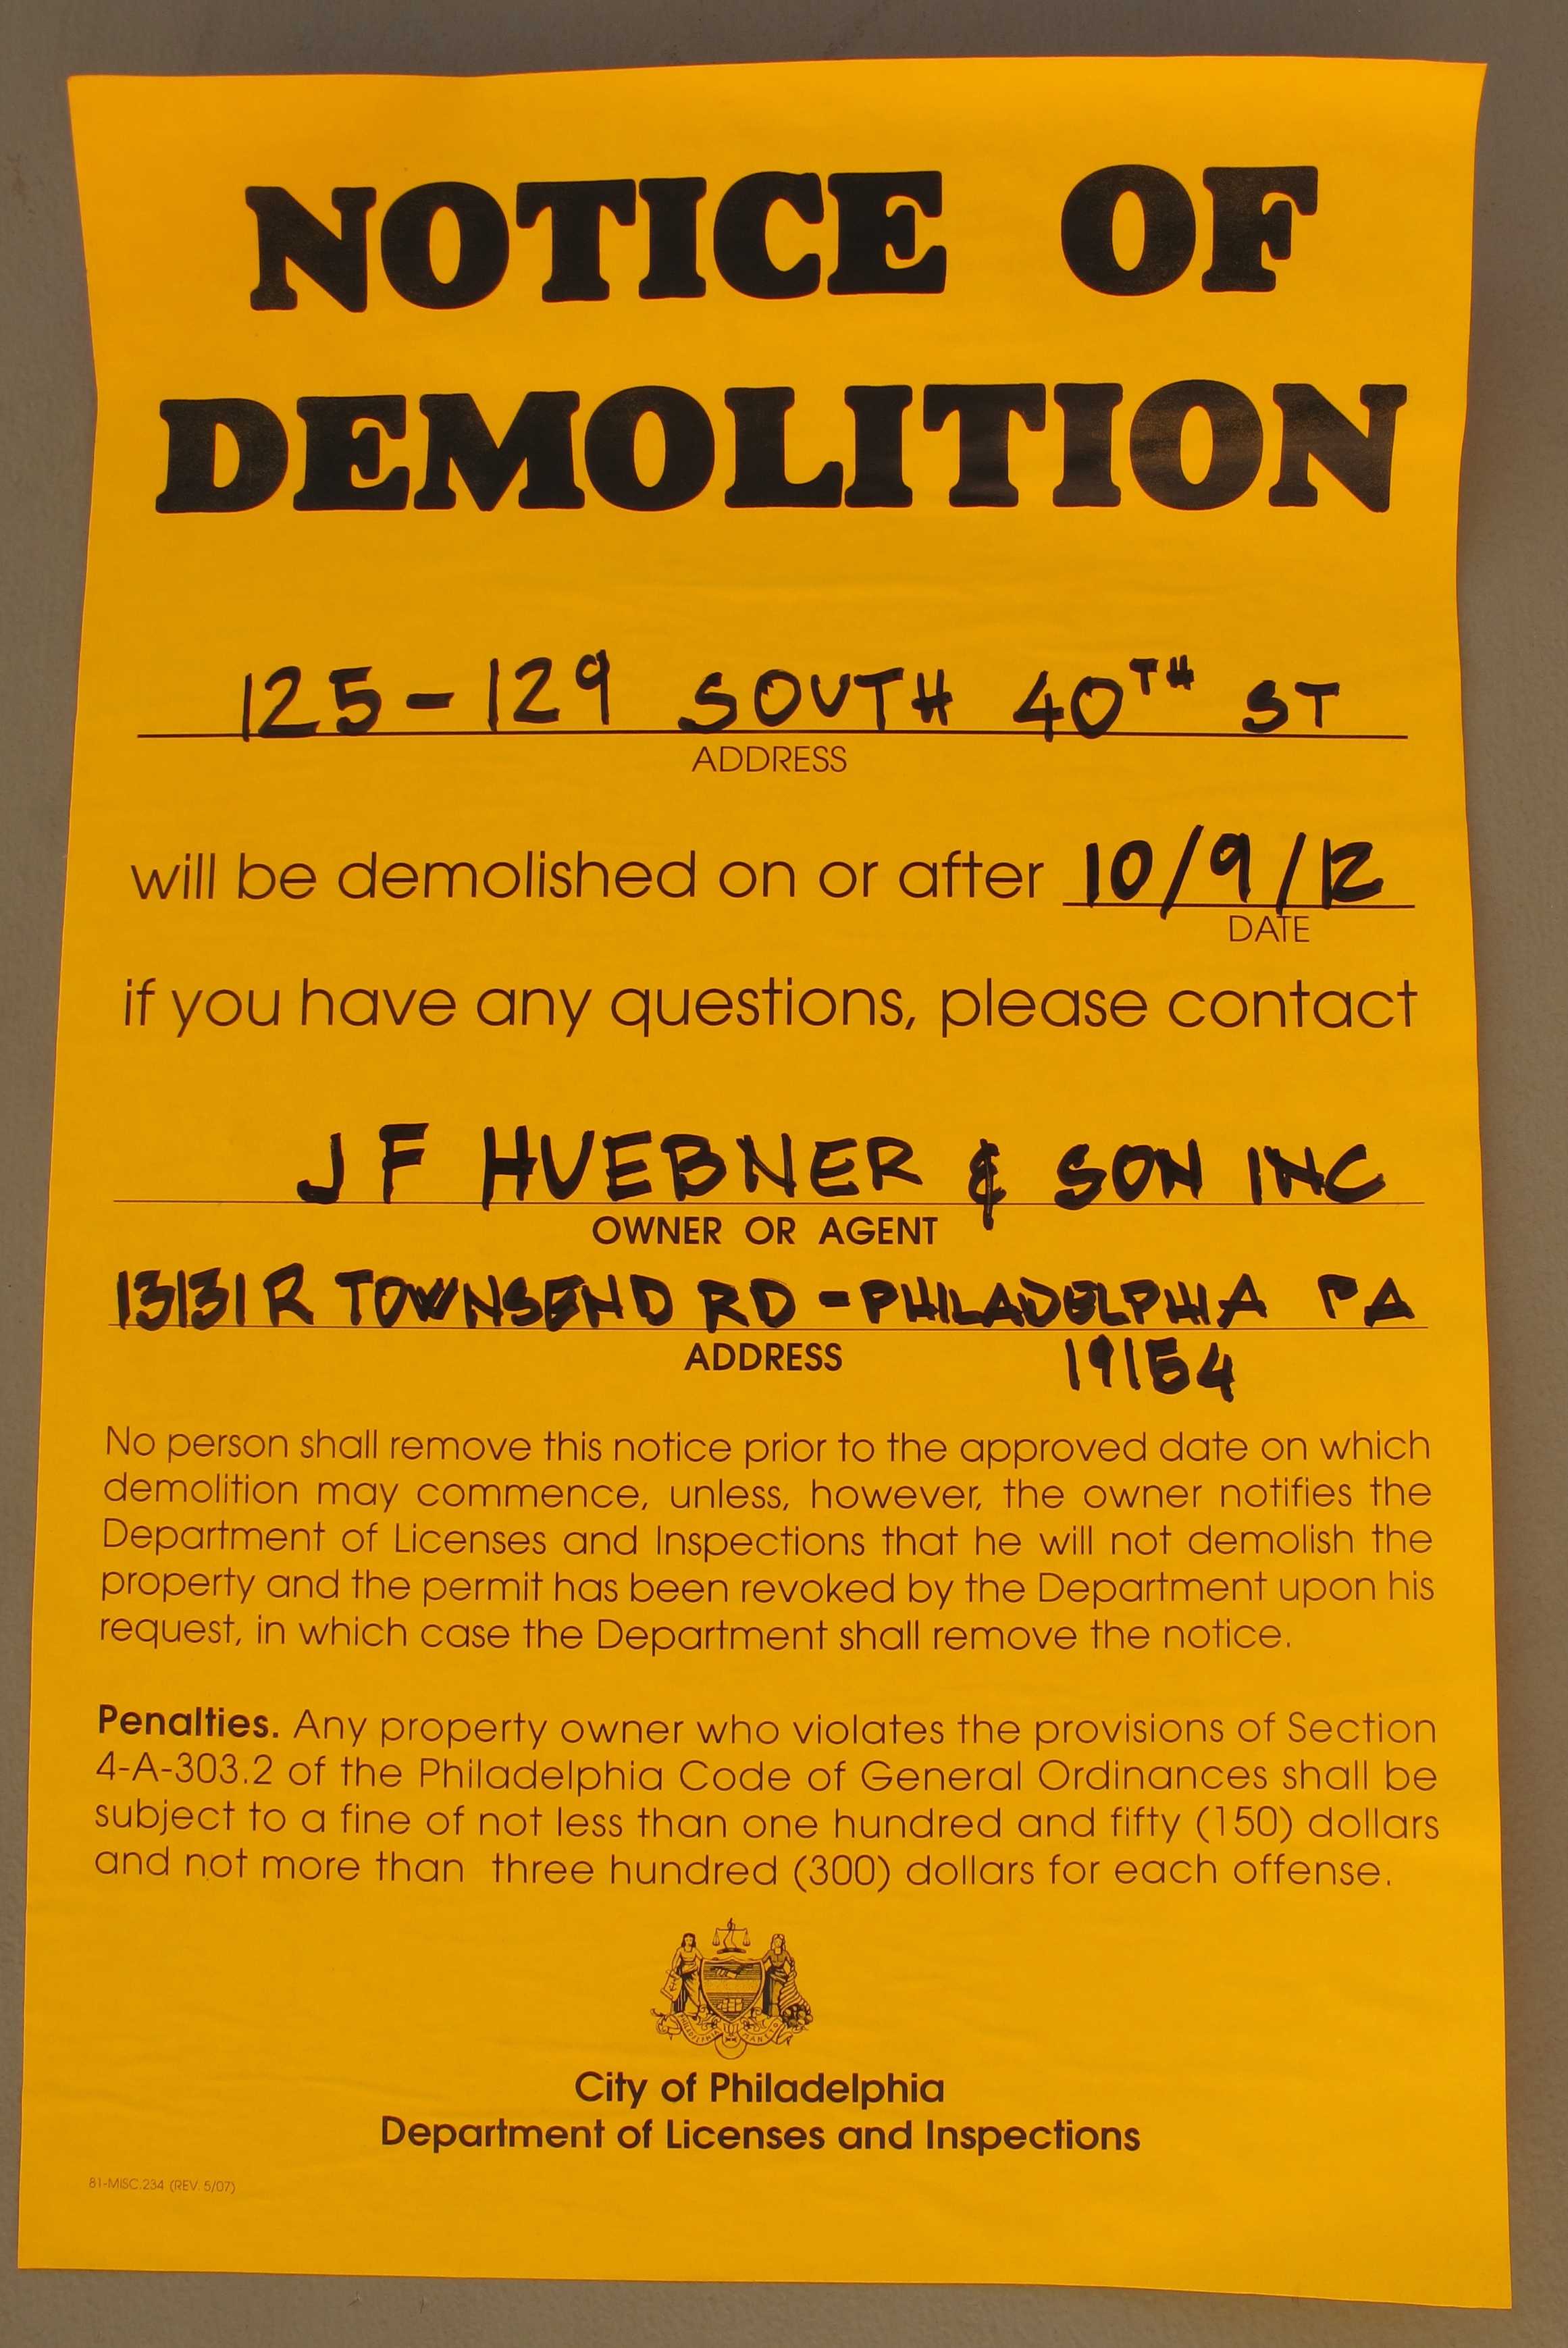 Demolition notice: 40th Street Methodist Episcopal Church